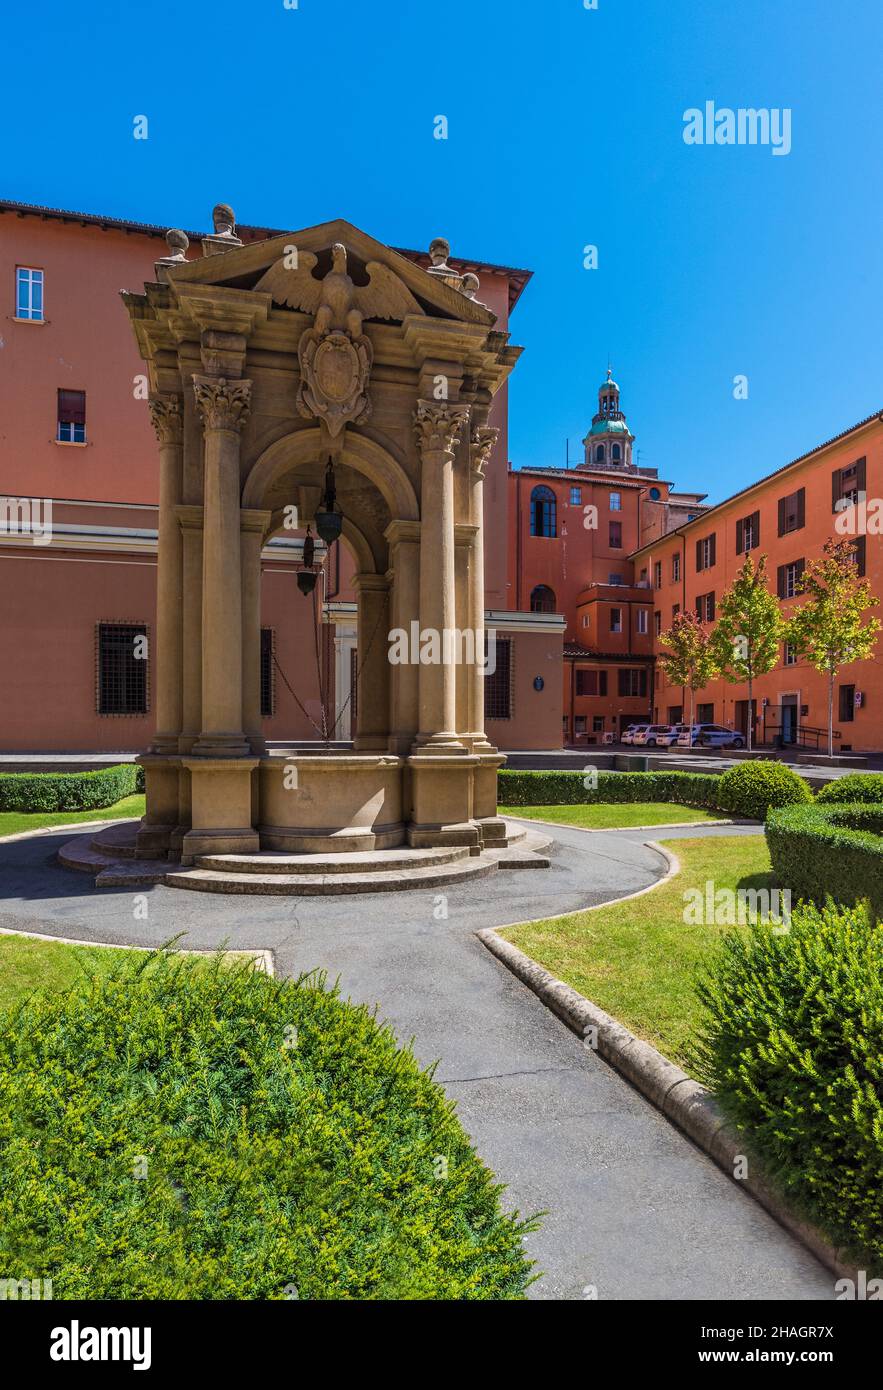 Bologne (Italie) - Une vue sur le centre historique de Bologne, la ville des porches et la capitale de la région d'Émilie-Romagne, au nord de l'Italie Banque D'Images